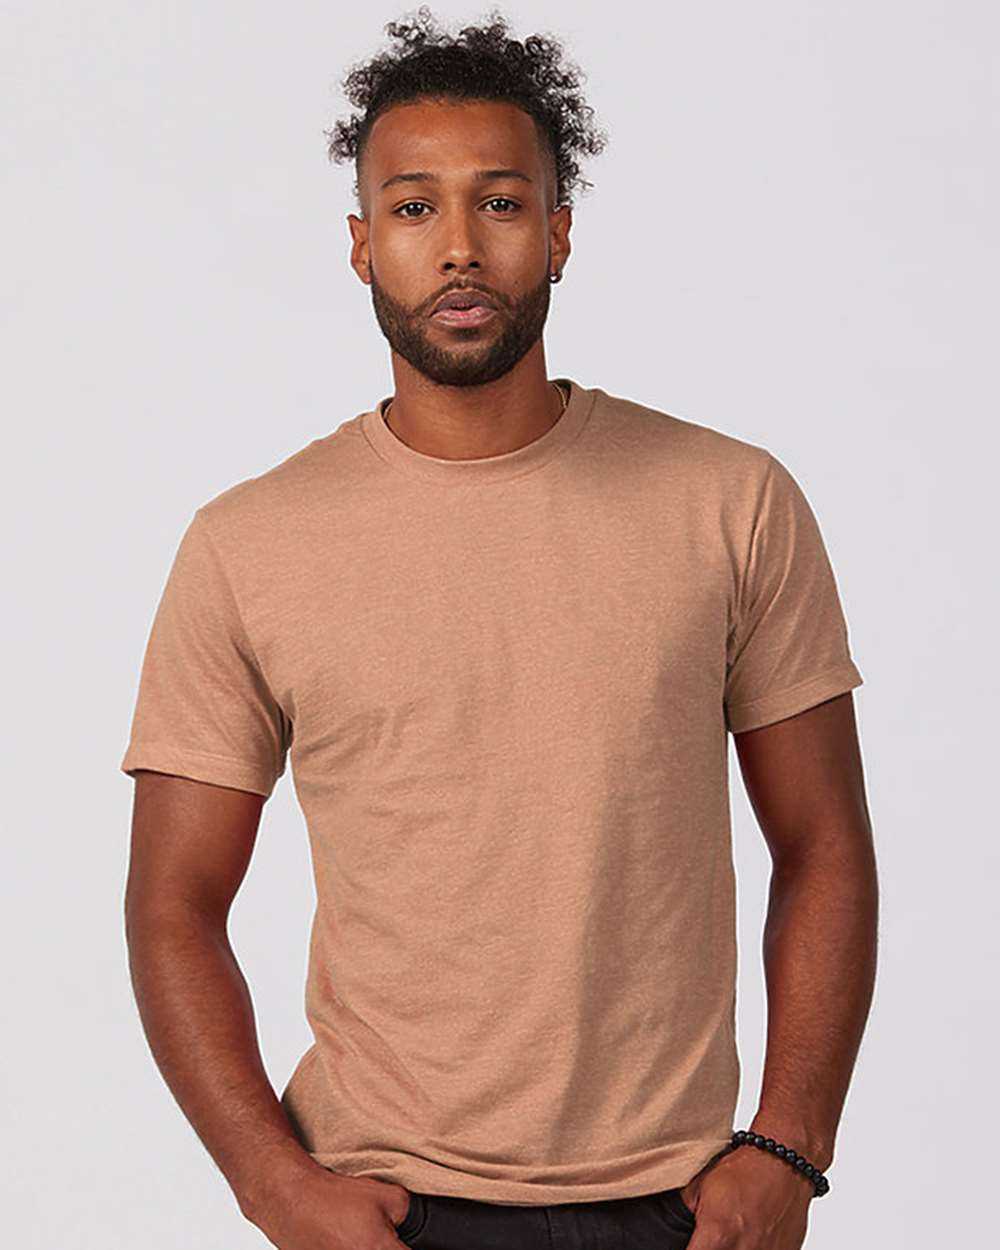 Tultex 541 Unisex Premium Cotton Blend T-Shirt - Peach Heather - HIT a Double